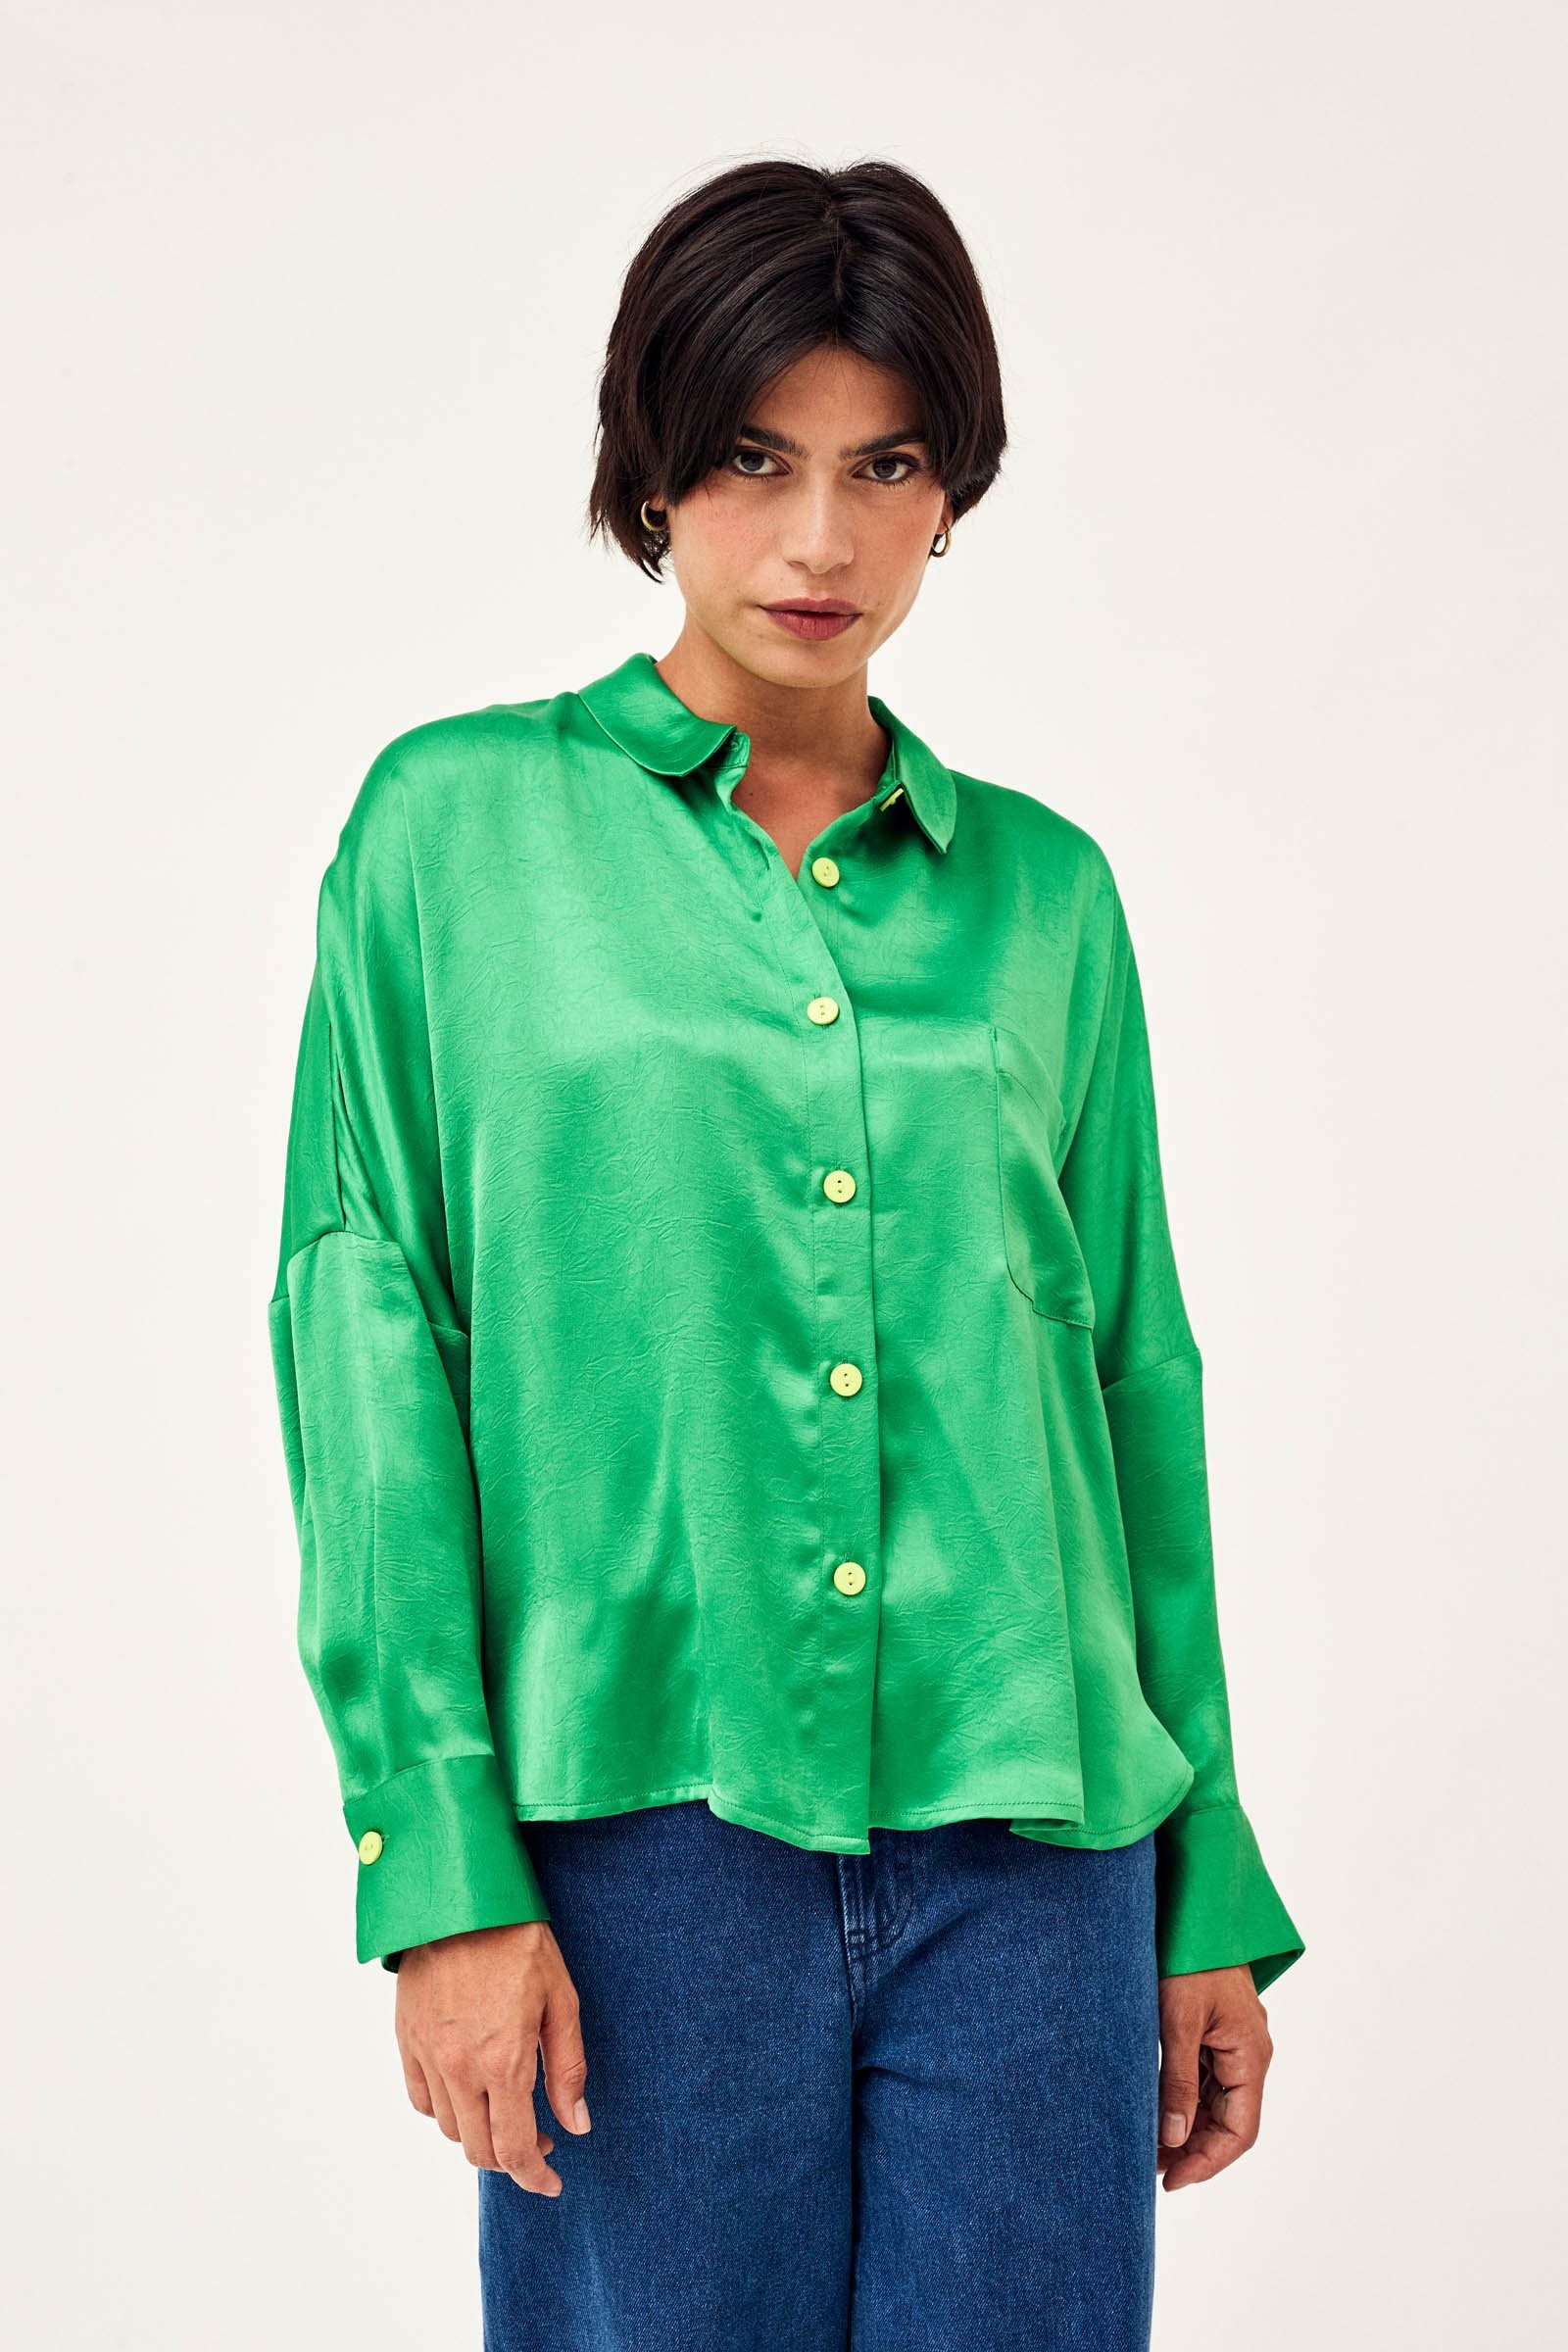 waarheid verkouden worden spuiten WAZNA - blouse lange mouwen - intens groen | CKS Fashion